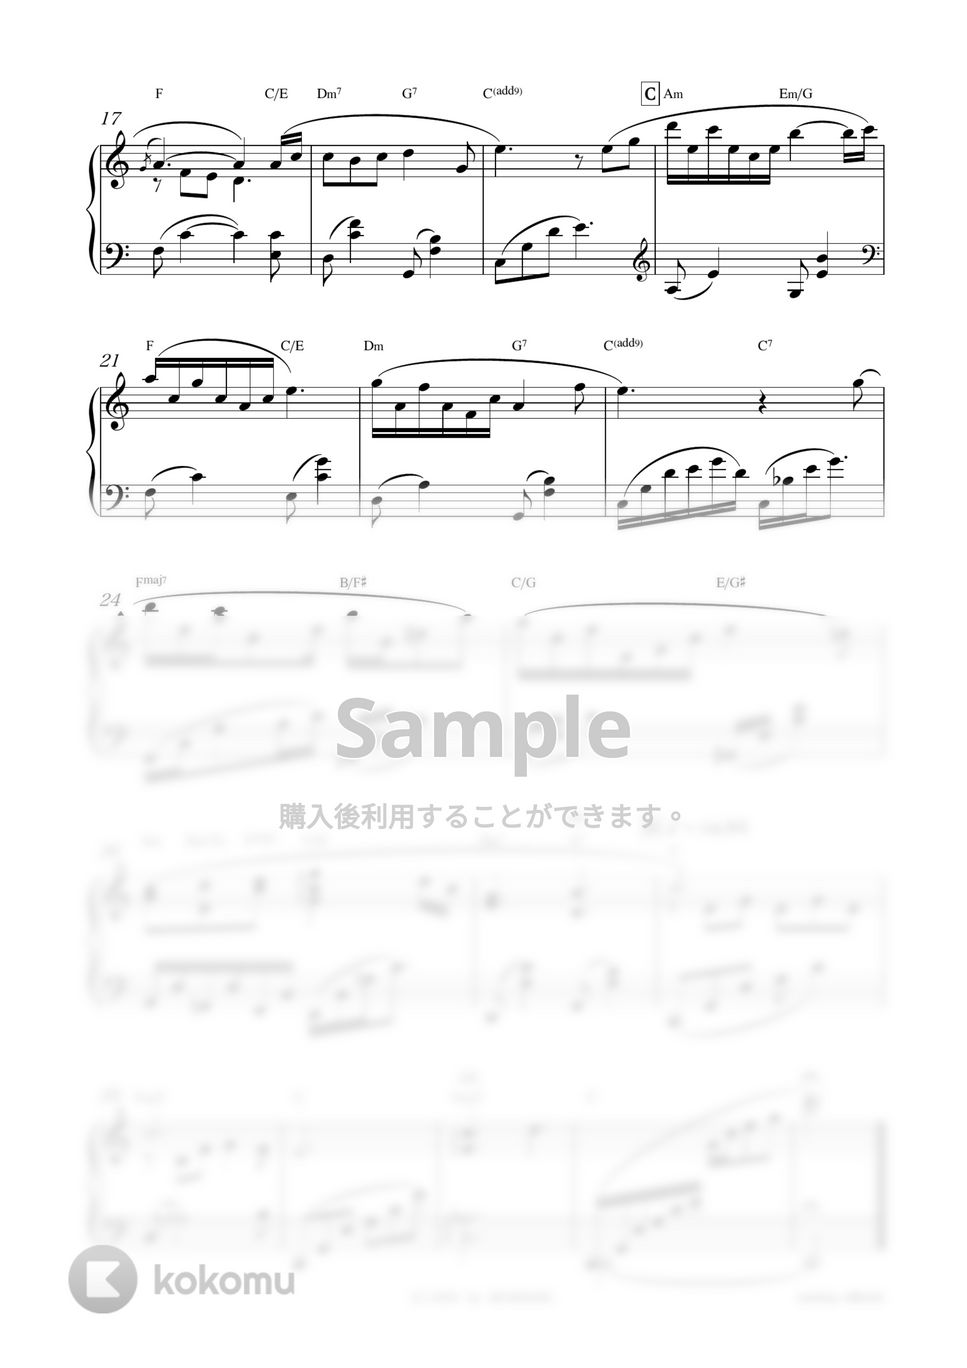 ドラマ『花より男子』OST - 午前4時 by sammy